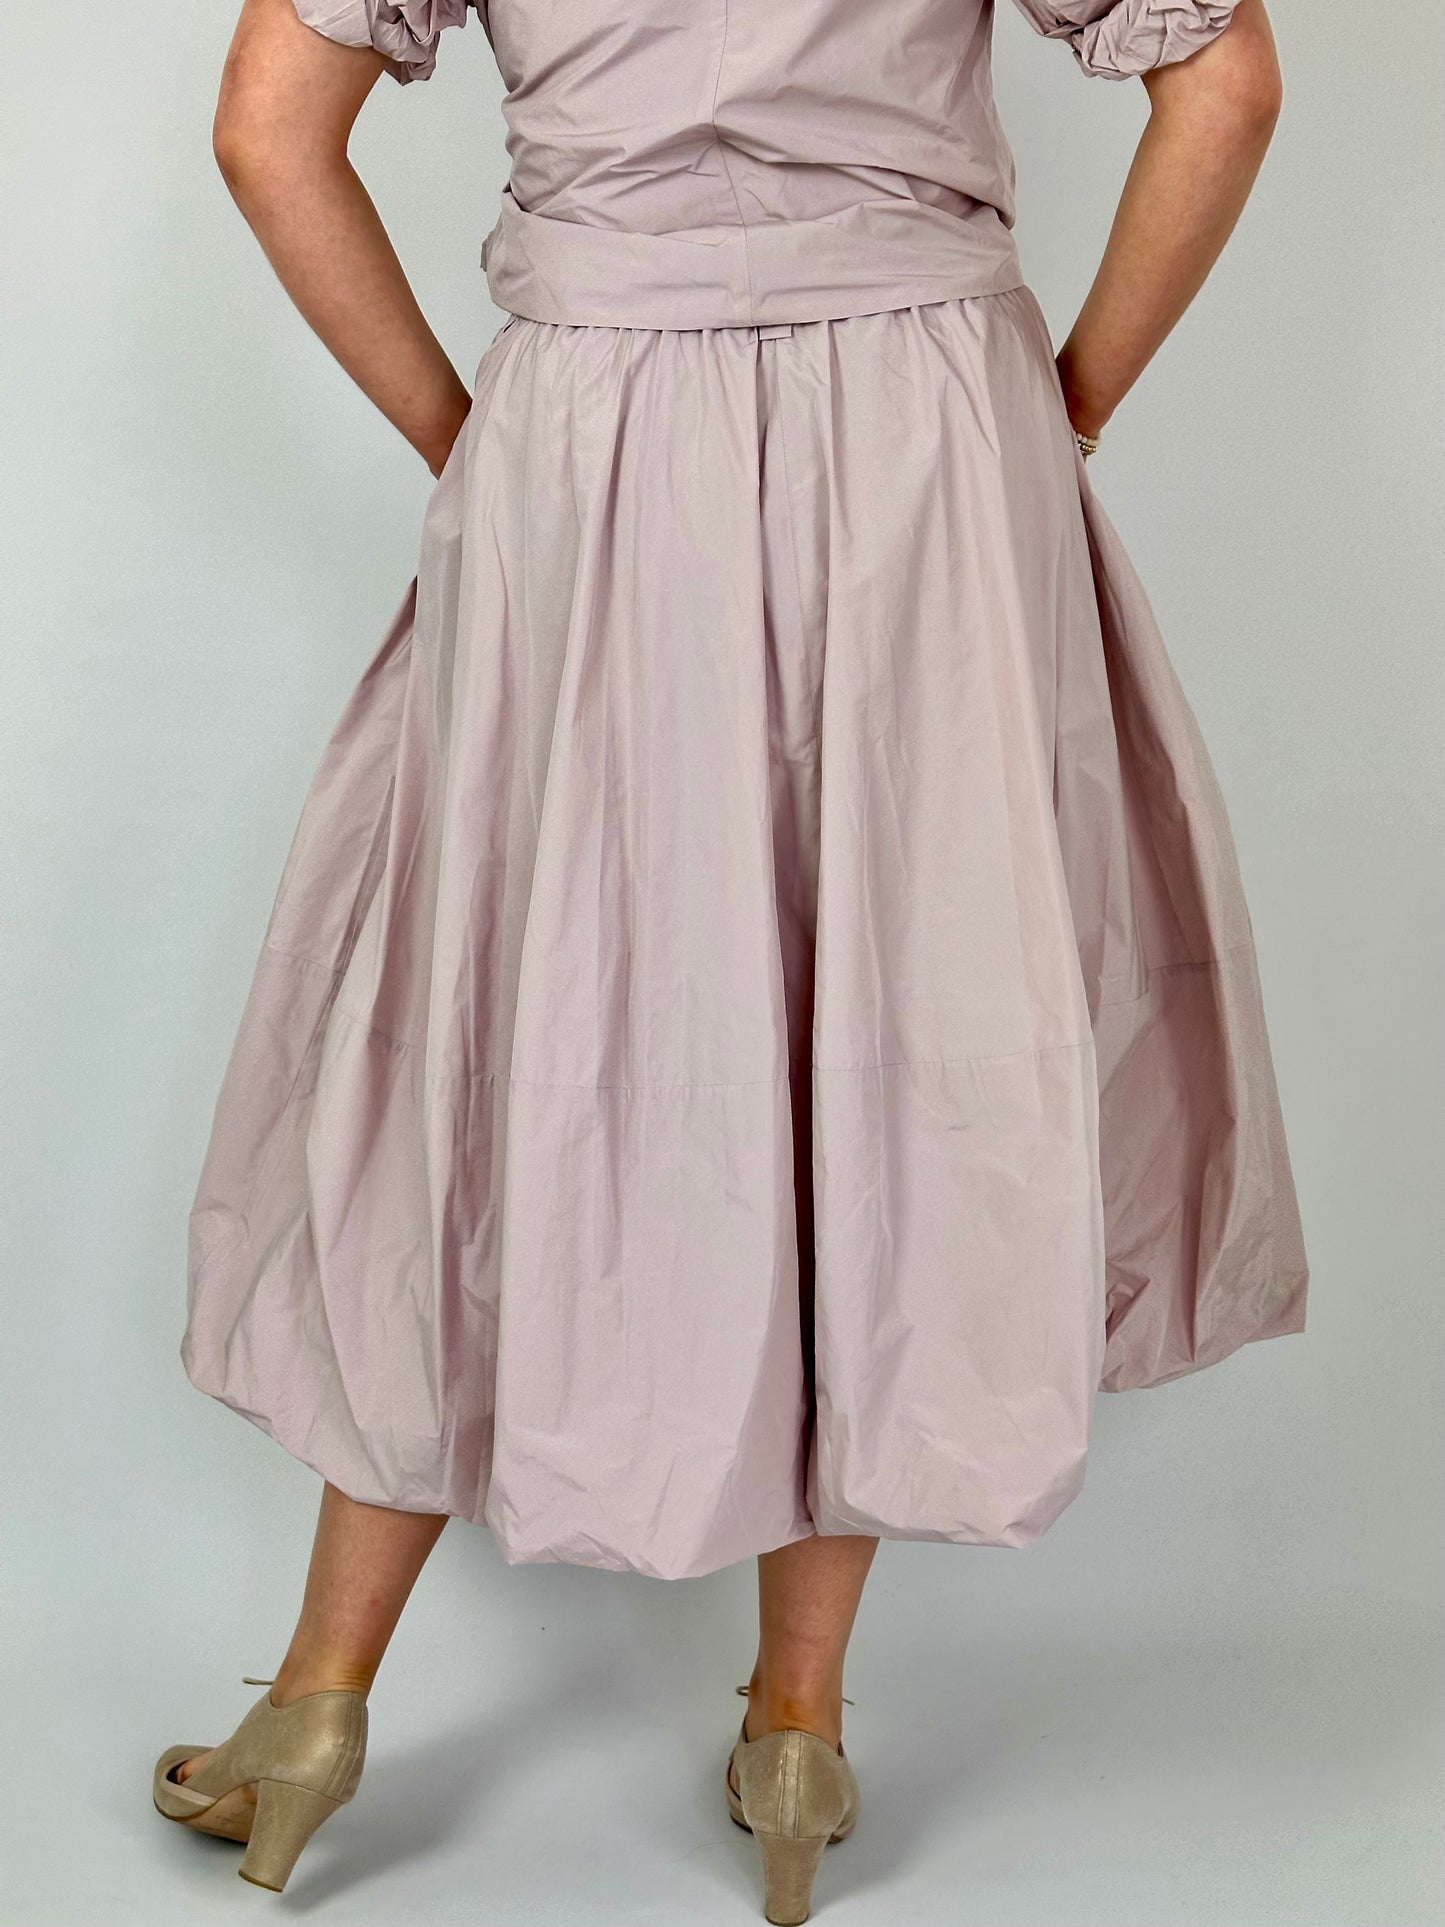 LFDA 566 Skirt Pink